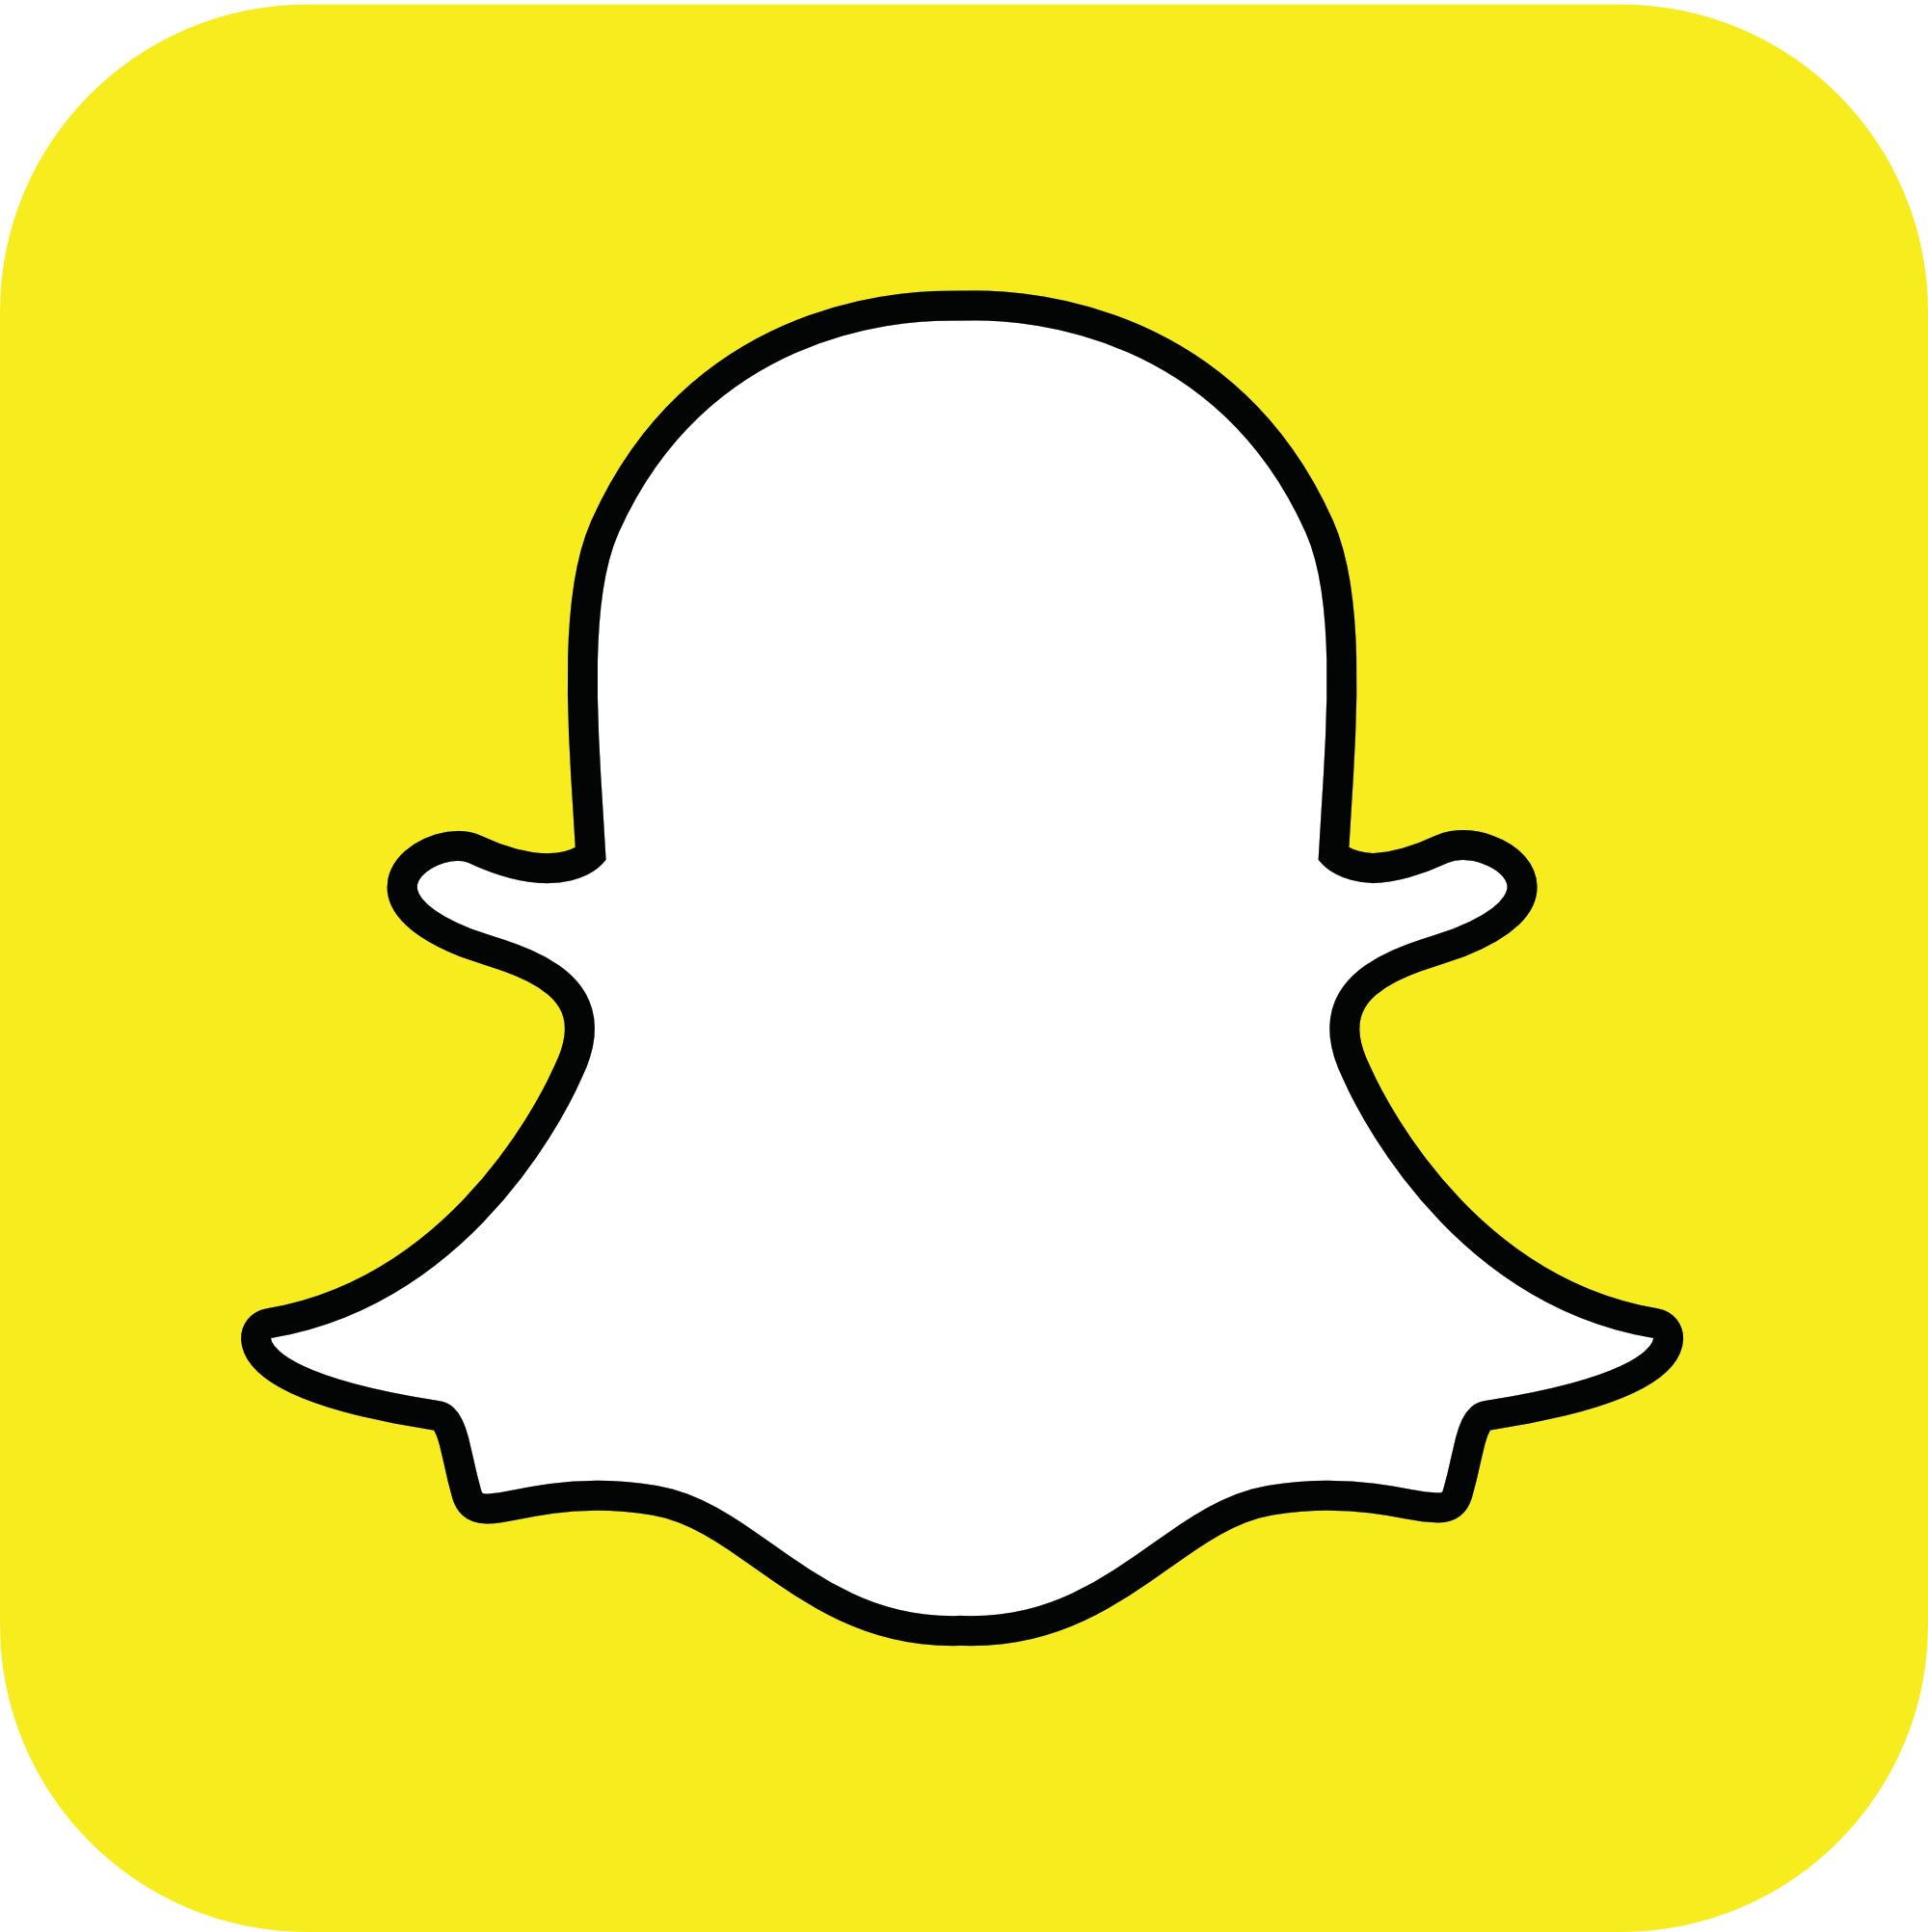 logo de Snapchat